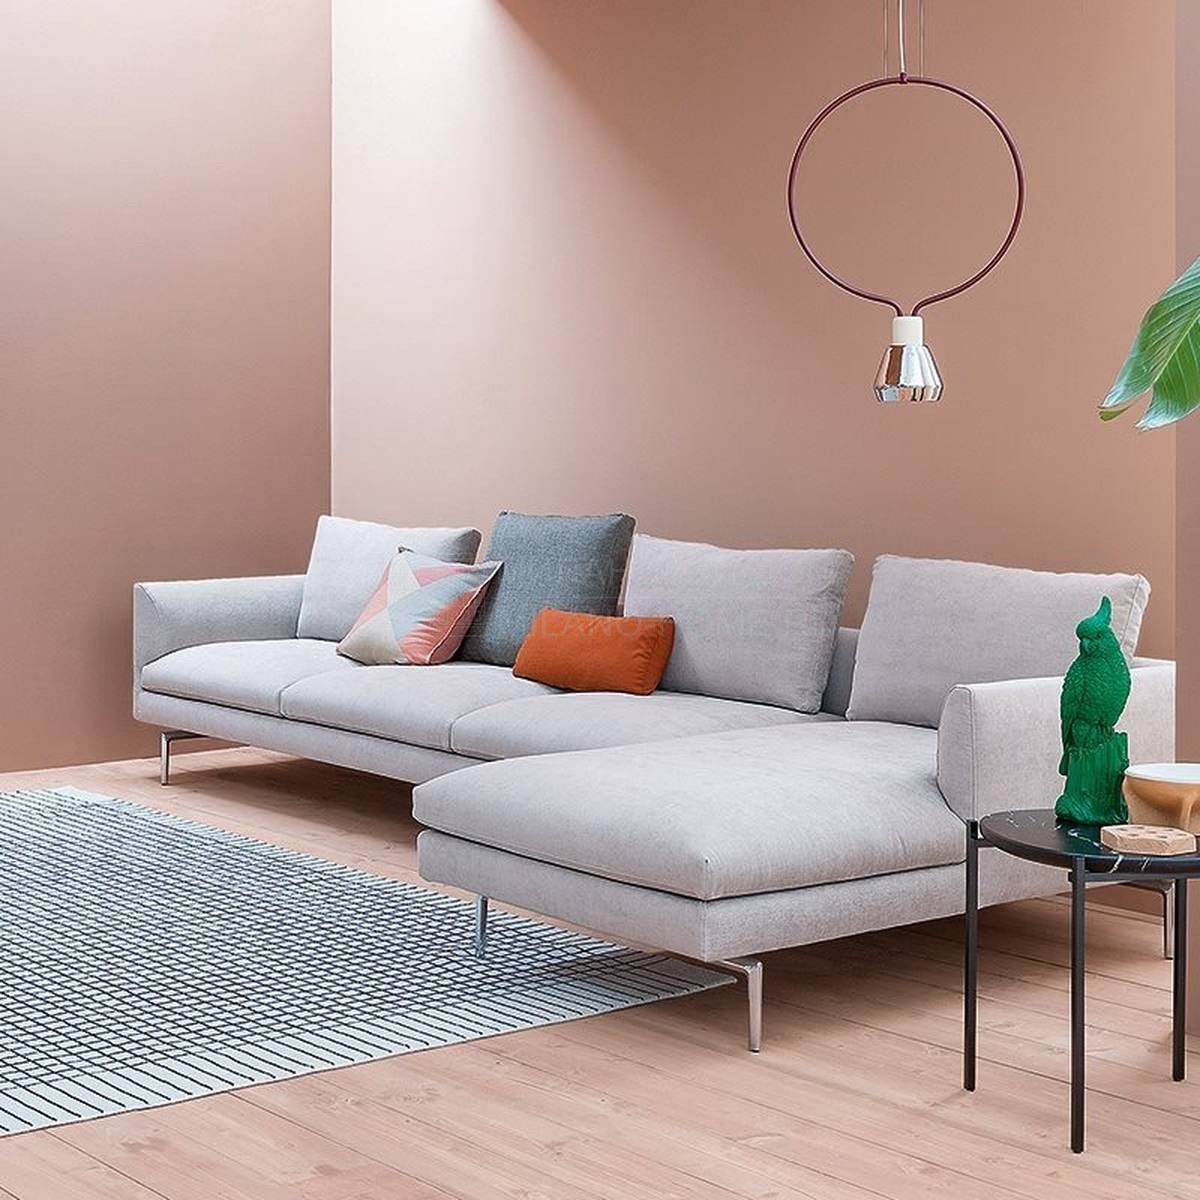 Угловой диван Flamingo sofa из Италии фабрики ZANOTTA